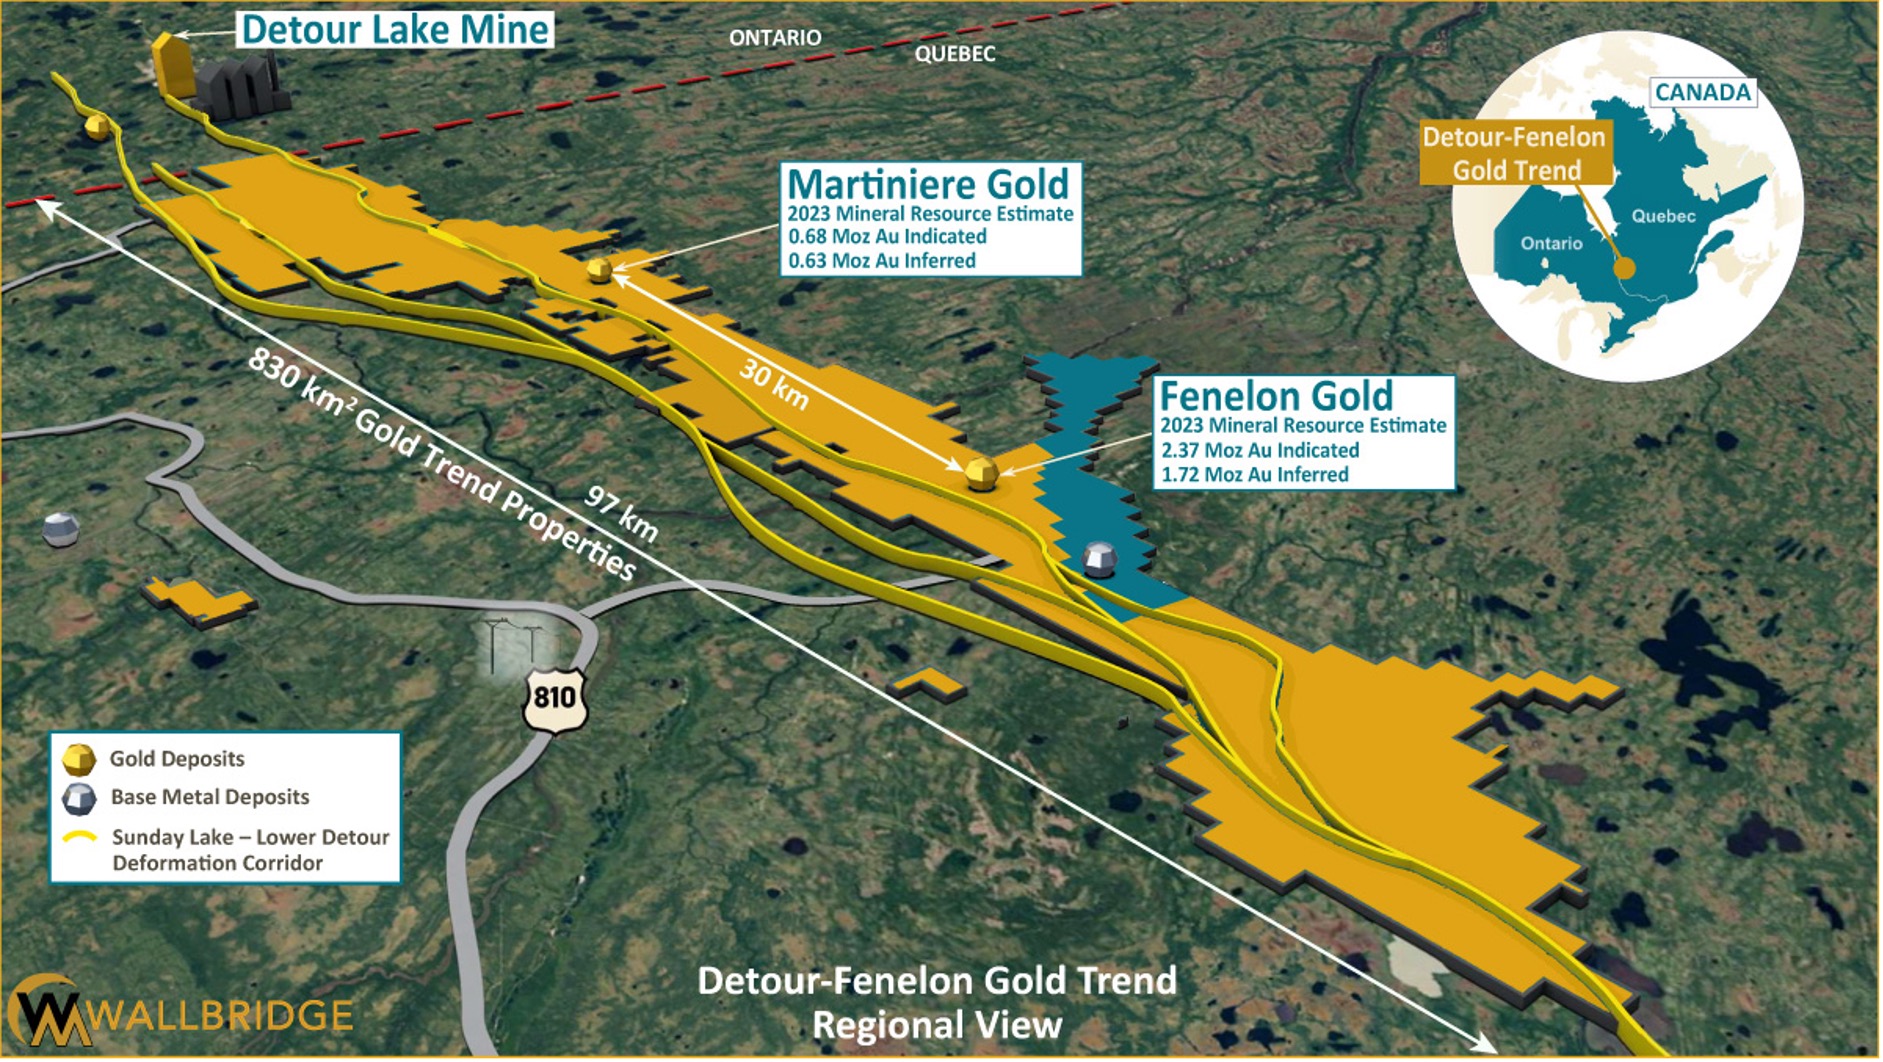 Wallbridge Expands Fenelon Gold System in Multiple